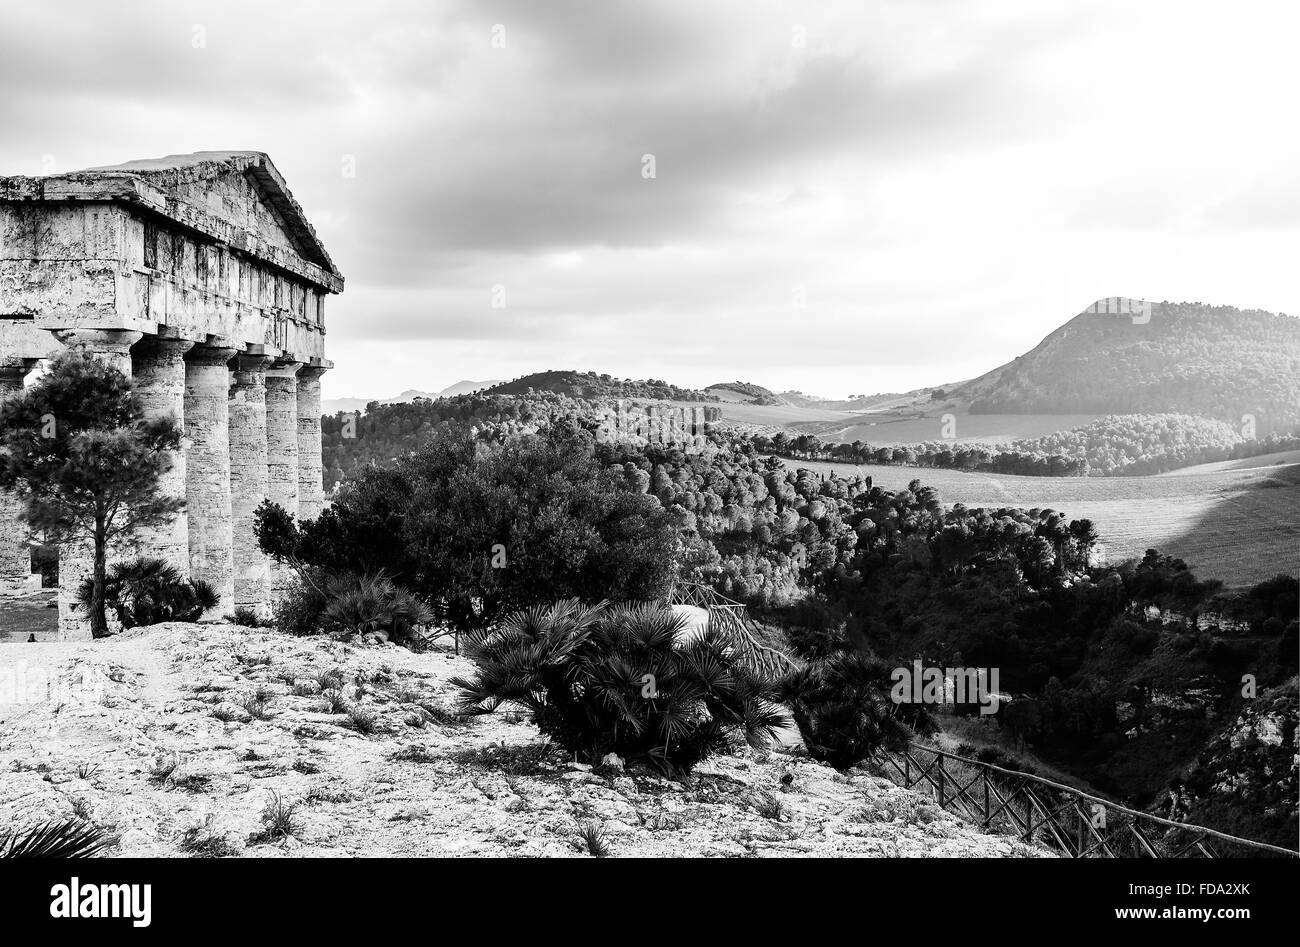 Der dorische Tempel von Segesta, Sizilien gebaut im späten 5. Jahrhundert v. Chr. Stockfoto